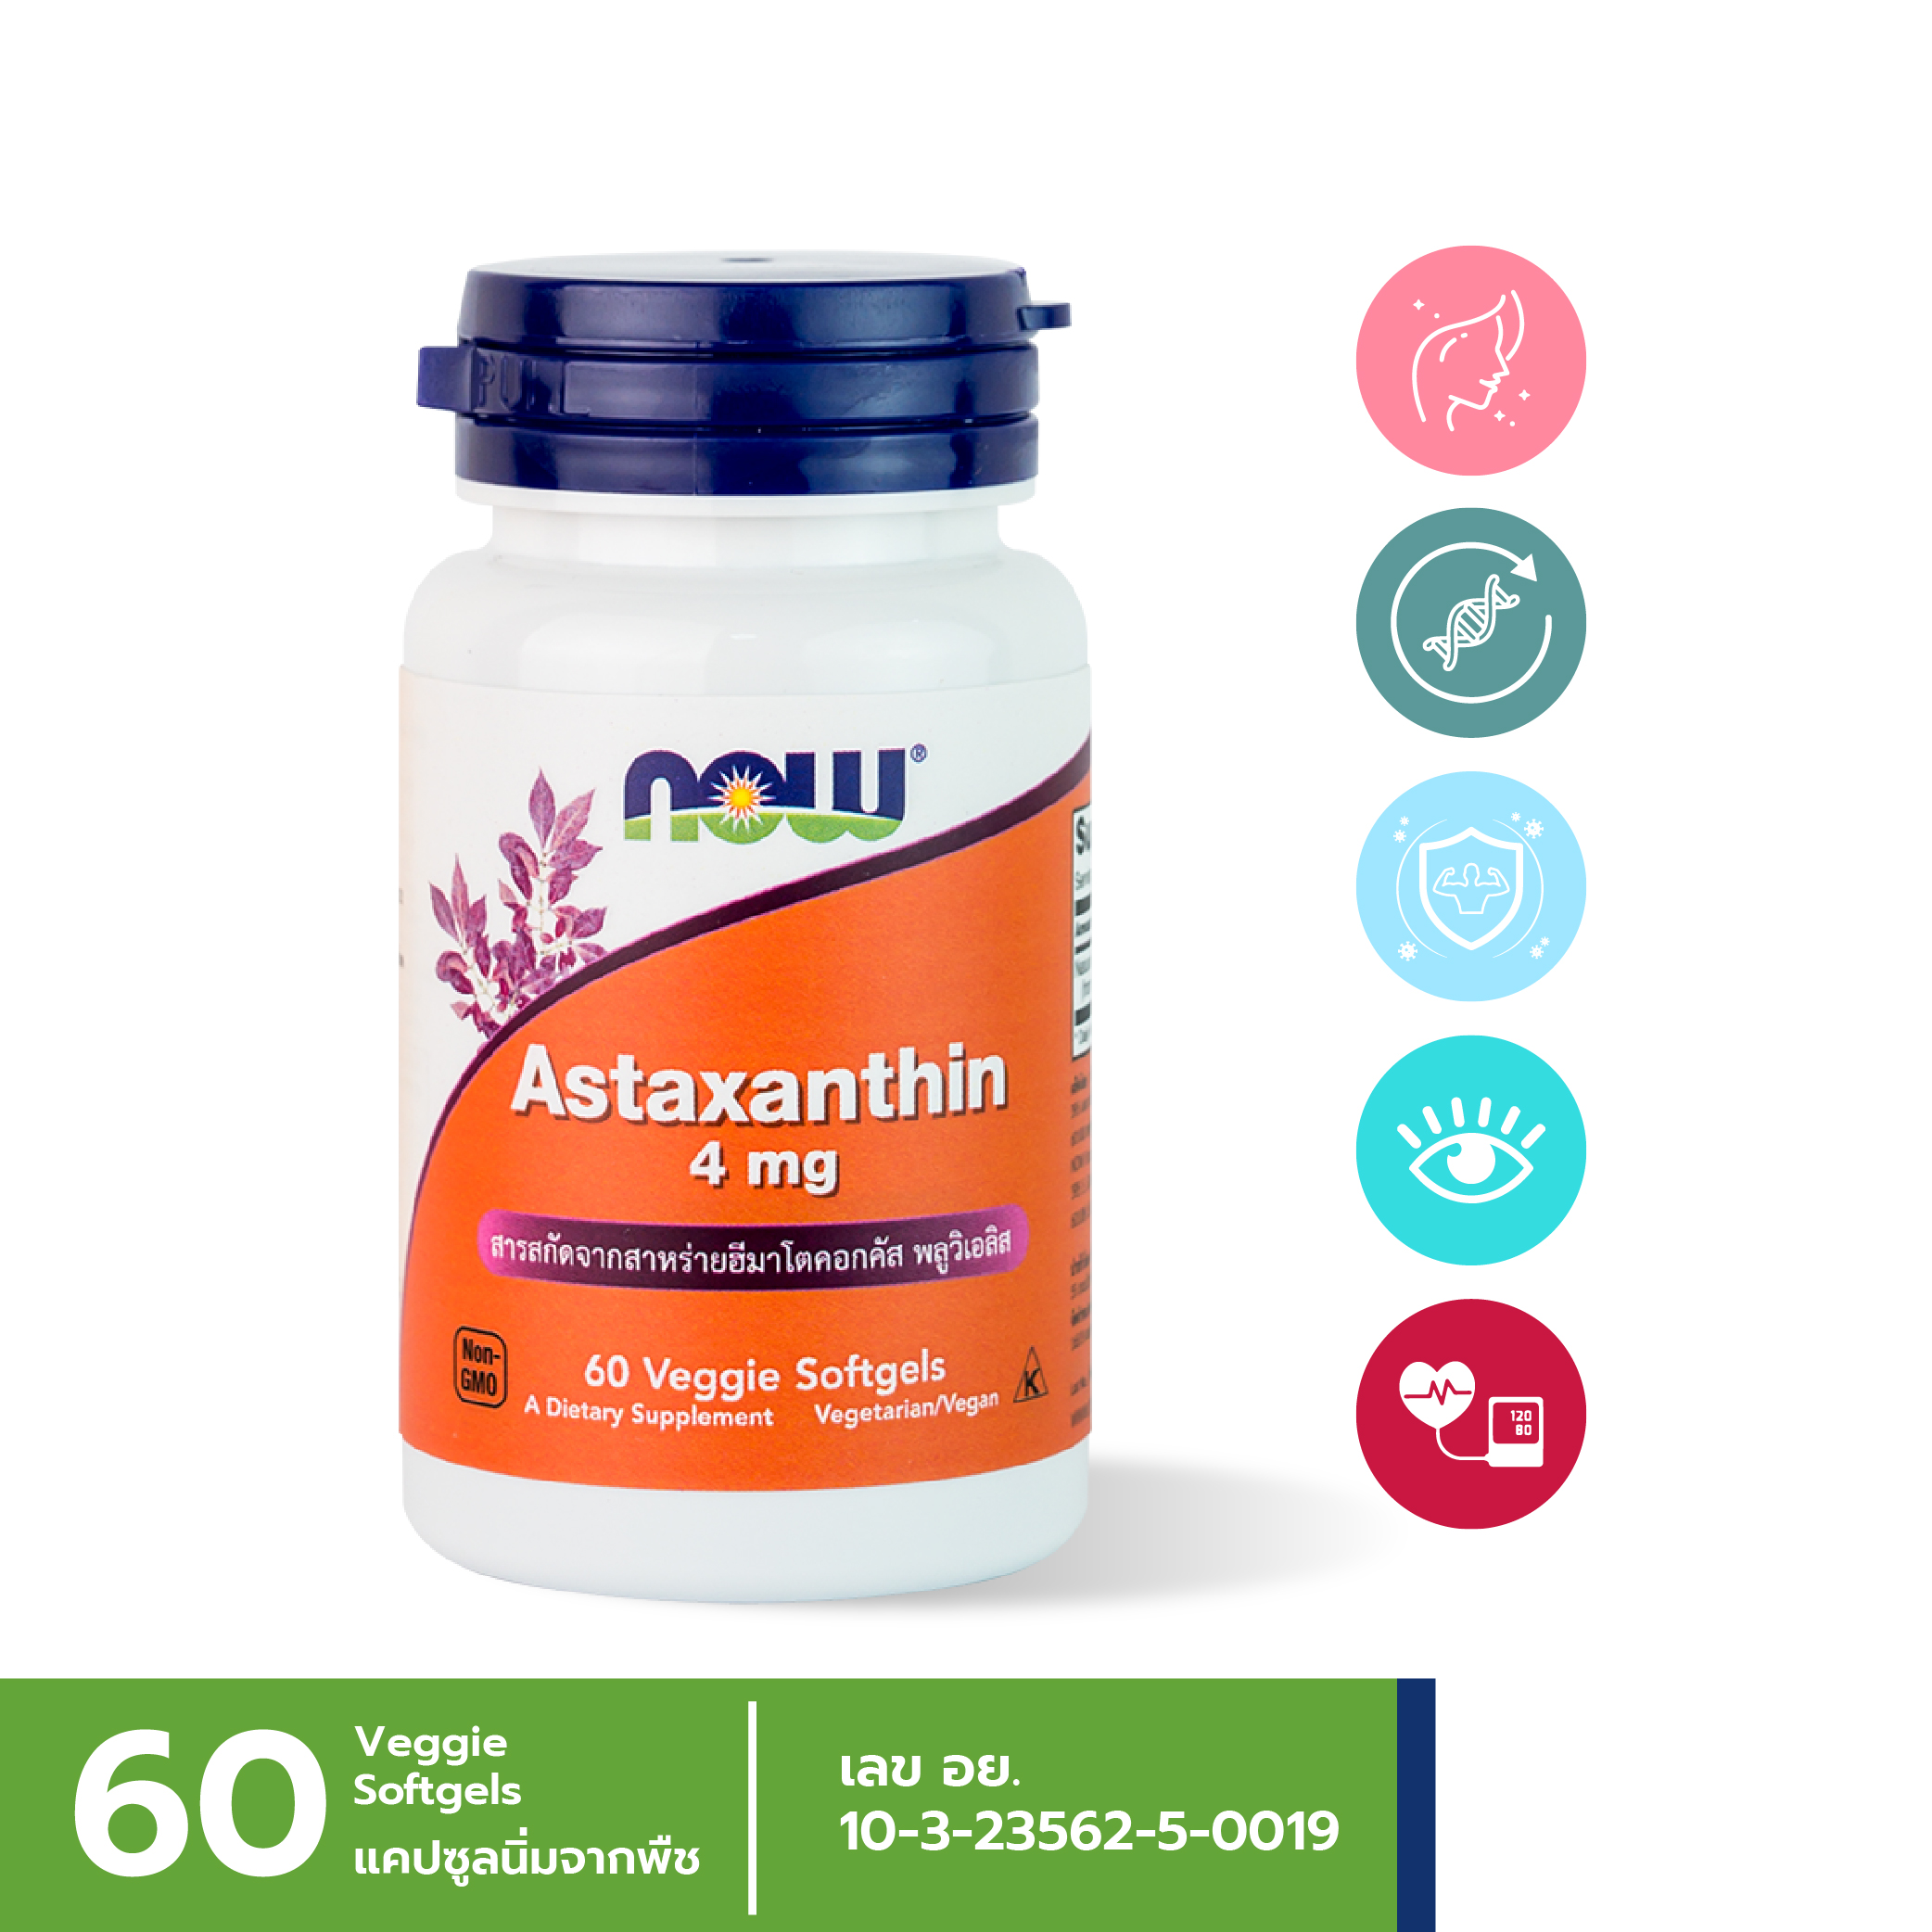 [ลูกค้าใหม่กรอก FORYOU89 ลดเลย 89.-] NOW Astaxanthin 4 mg (60 Veggie Softgels)